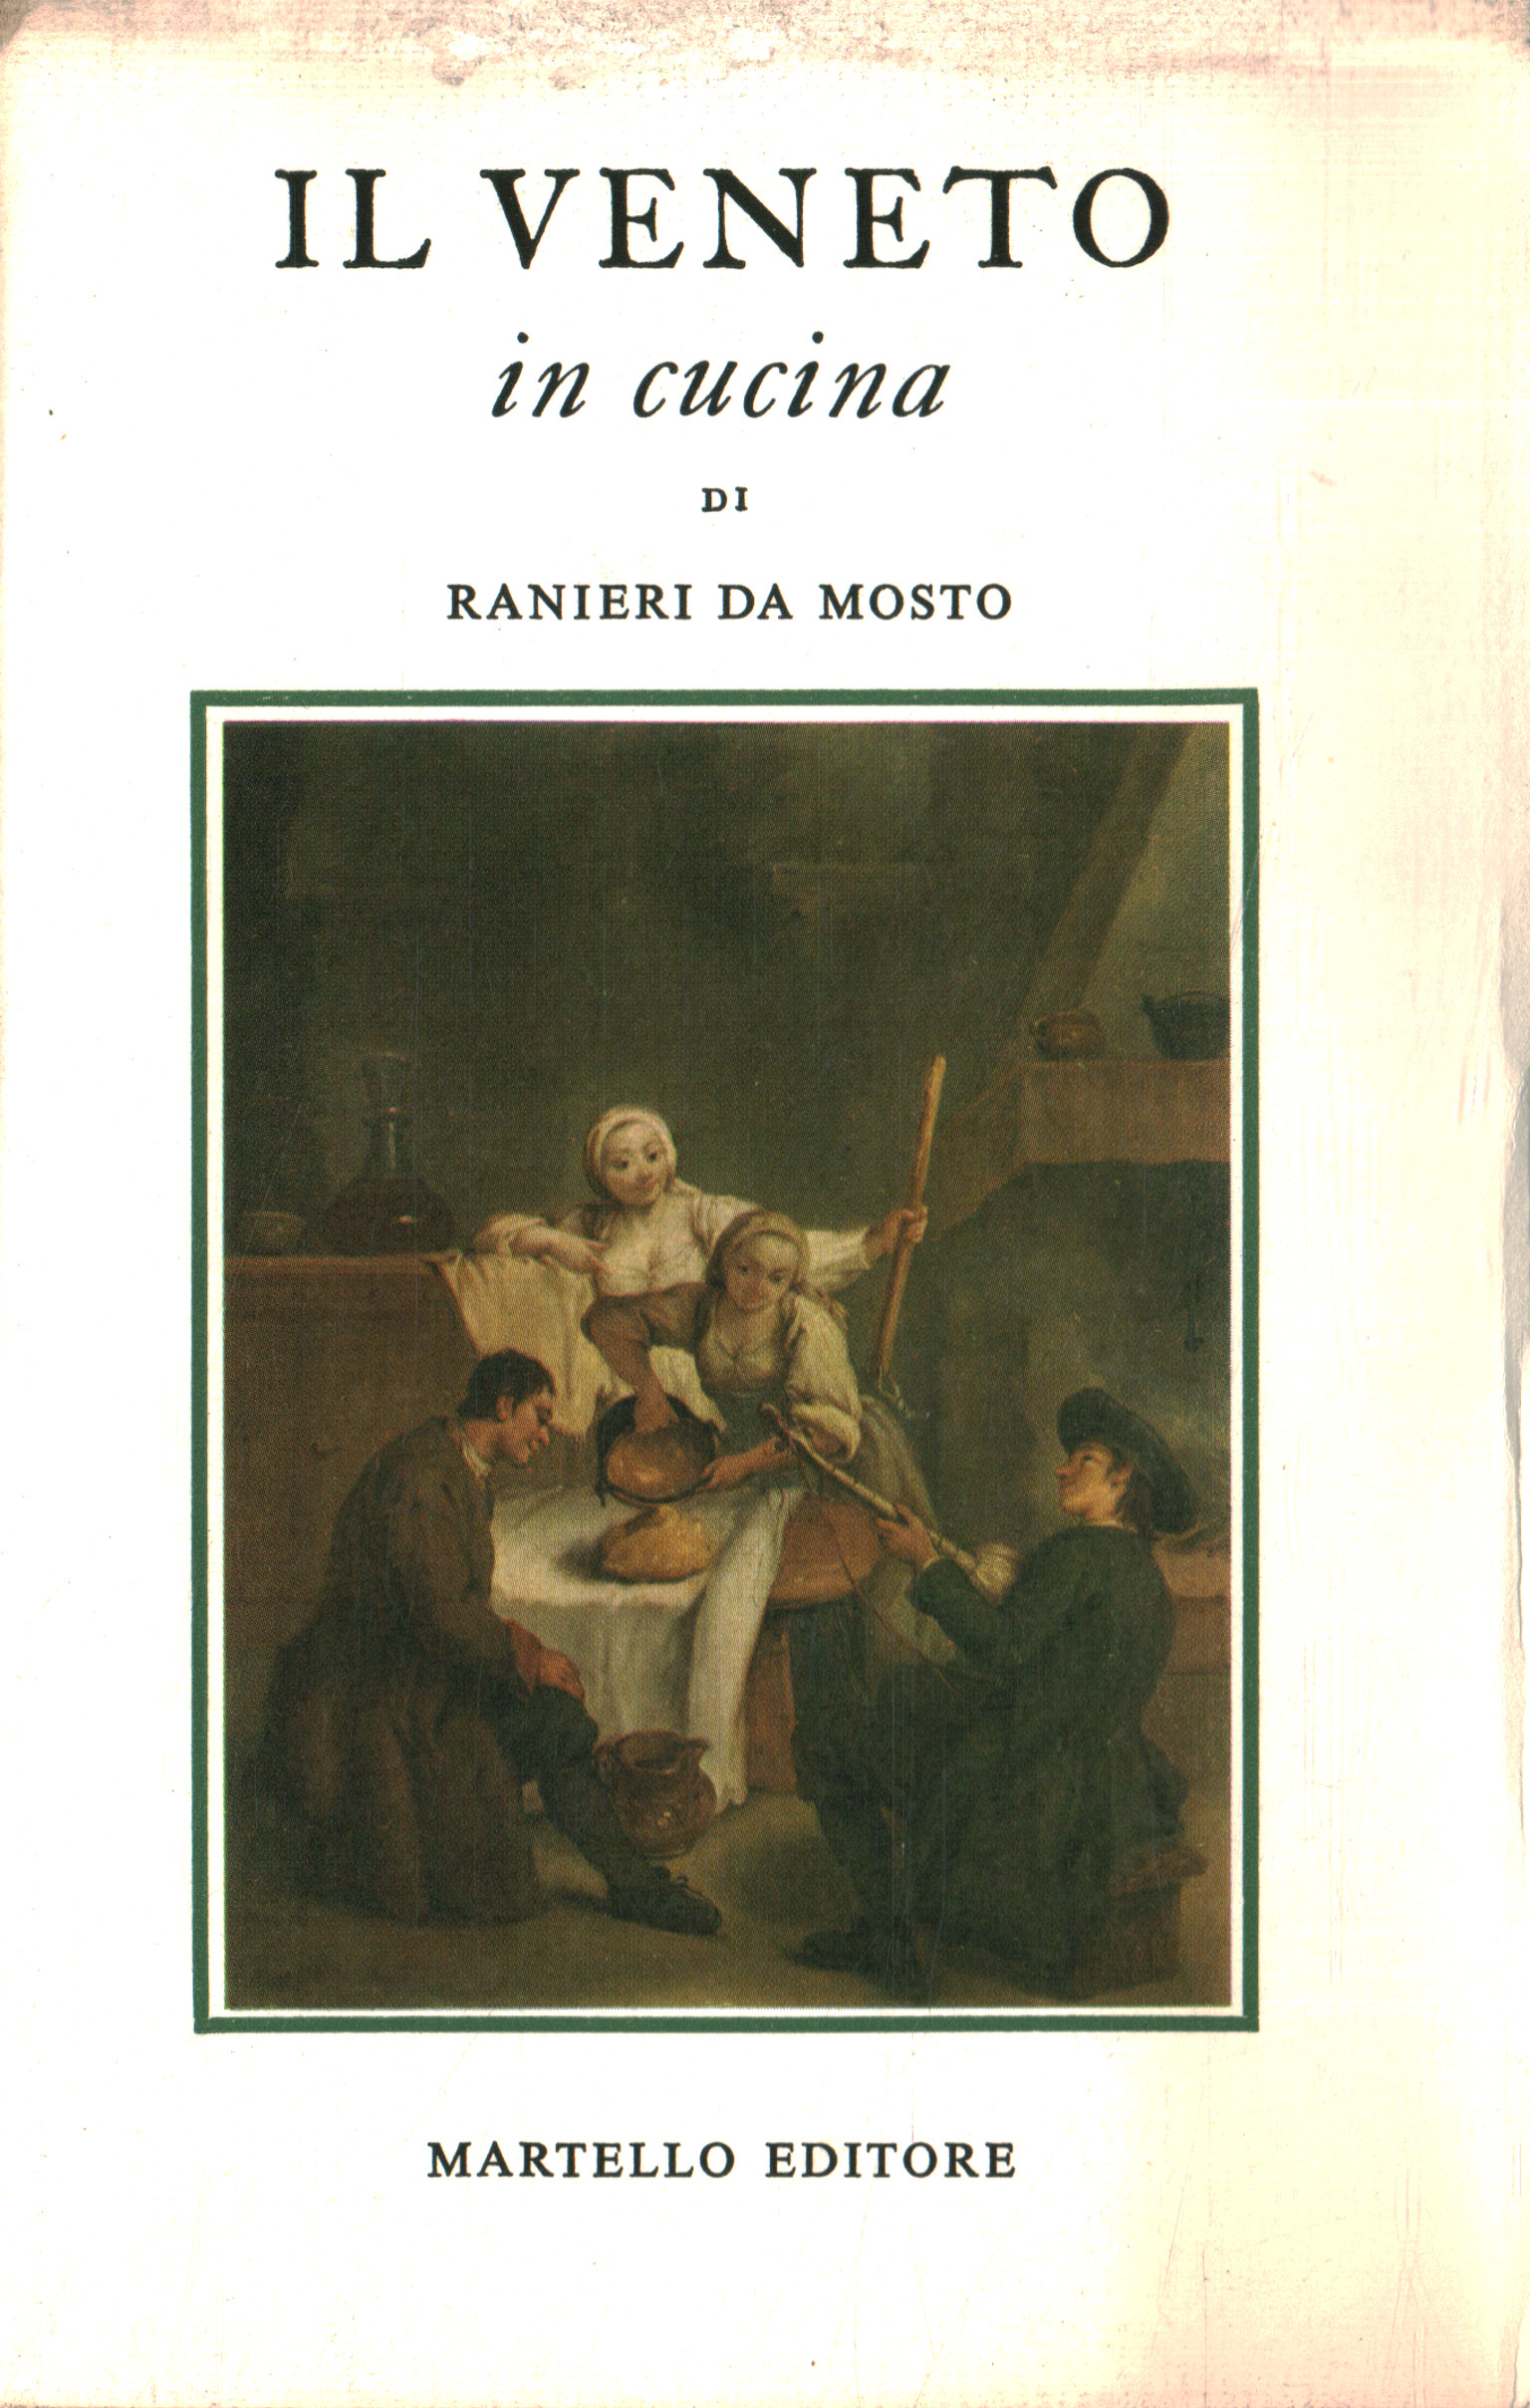 Aldo Martello Editore 1969 Ranieri da Mosto Il Veneto in cucina 